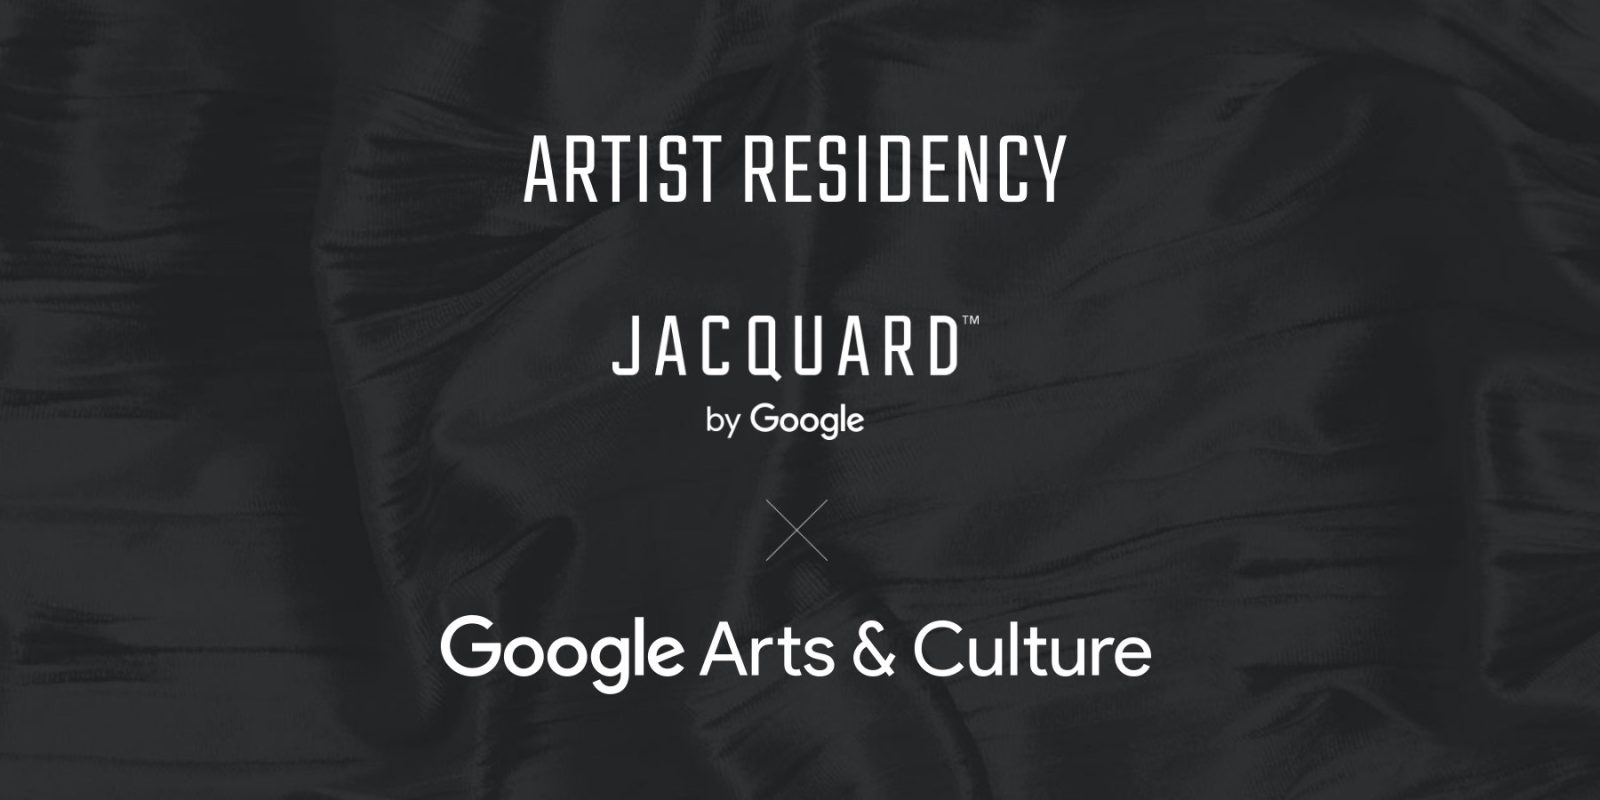 Google Jacquard artist residency